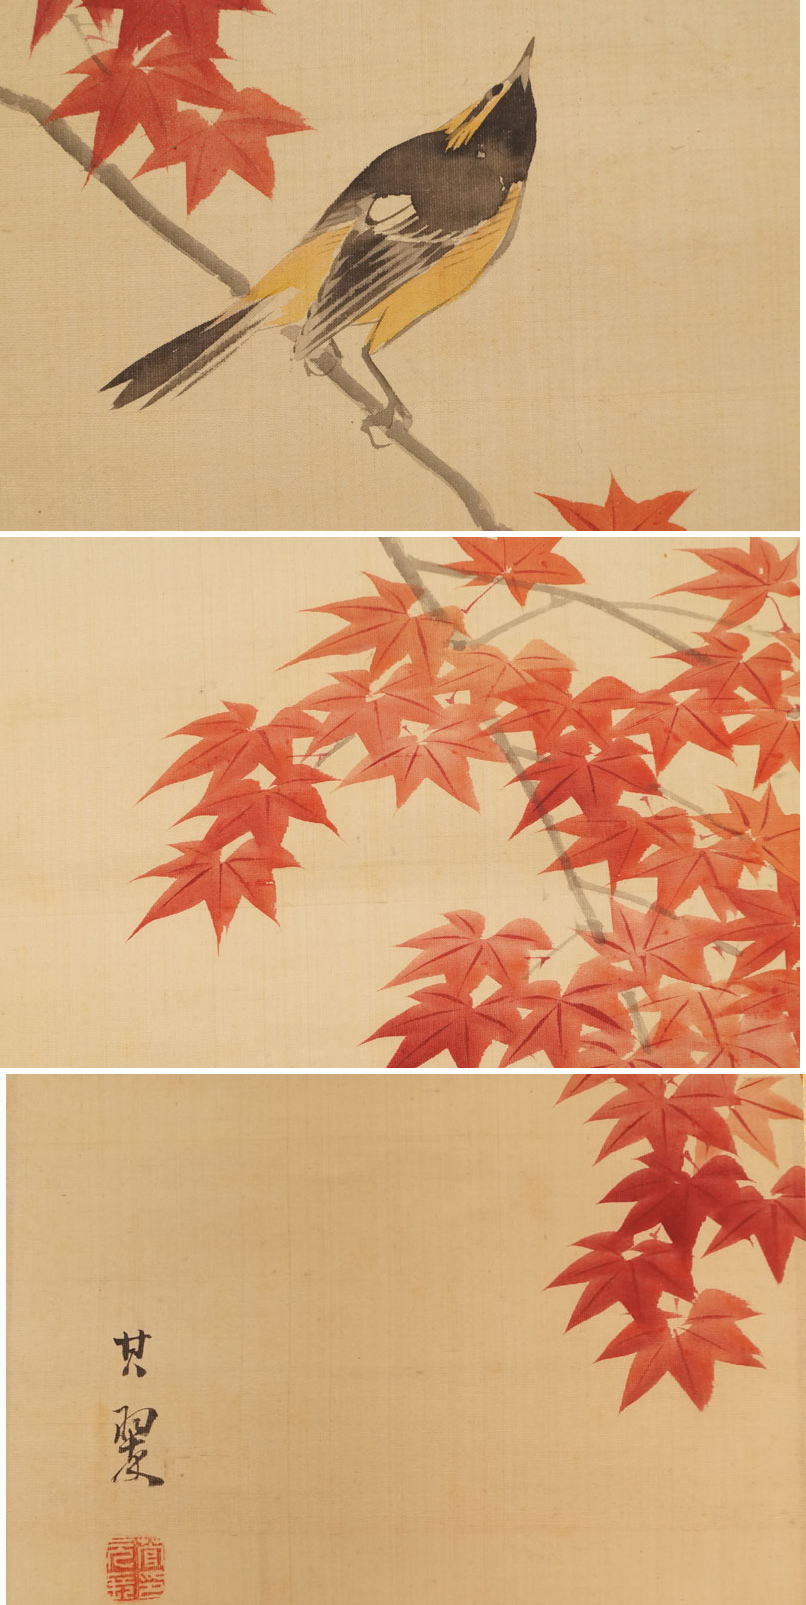 【特価最安値】235-菅其翠『紅葉小禽』 日本画 掛軸 共箱 花鳥、鳥獣